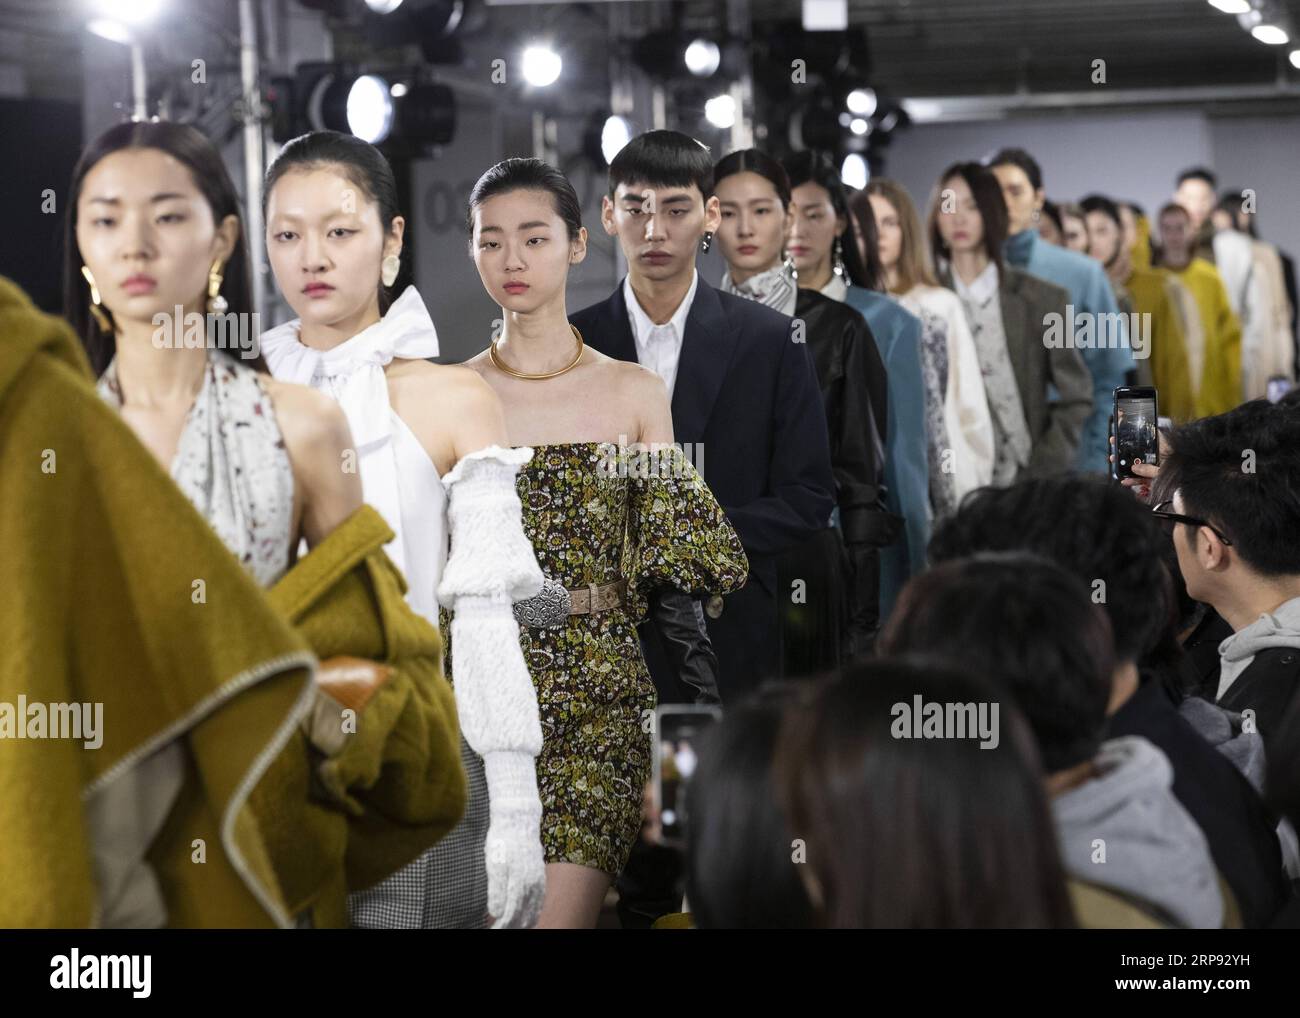 (190321) -- SÉOUL, 21 mars 2019 (Xinhua) -- des mannequins présentent des créations du designer Yoon Choon-ho lors de la Fashion week de Séoul 2019 à Séoul, Corée du Sud, le 21 mars 2019. (Xinhua/Lee sang-ho) CORÉE DU SUD-SÉOUL-FASHION WEEK PUBLICATIONxNOTxINxCHN Banque D'Images